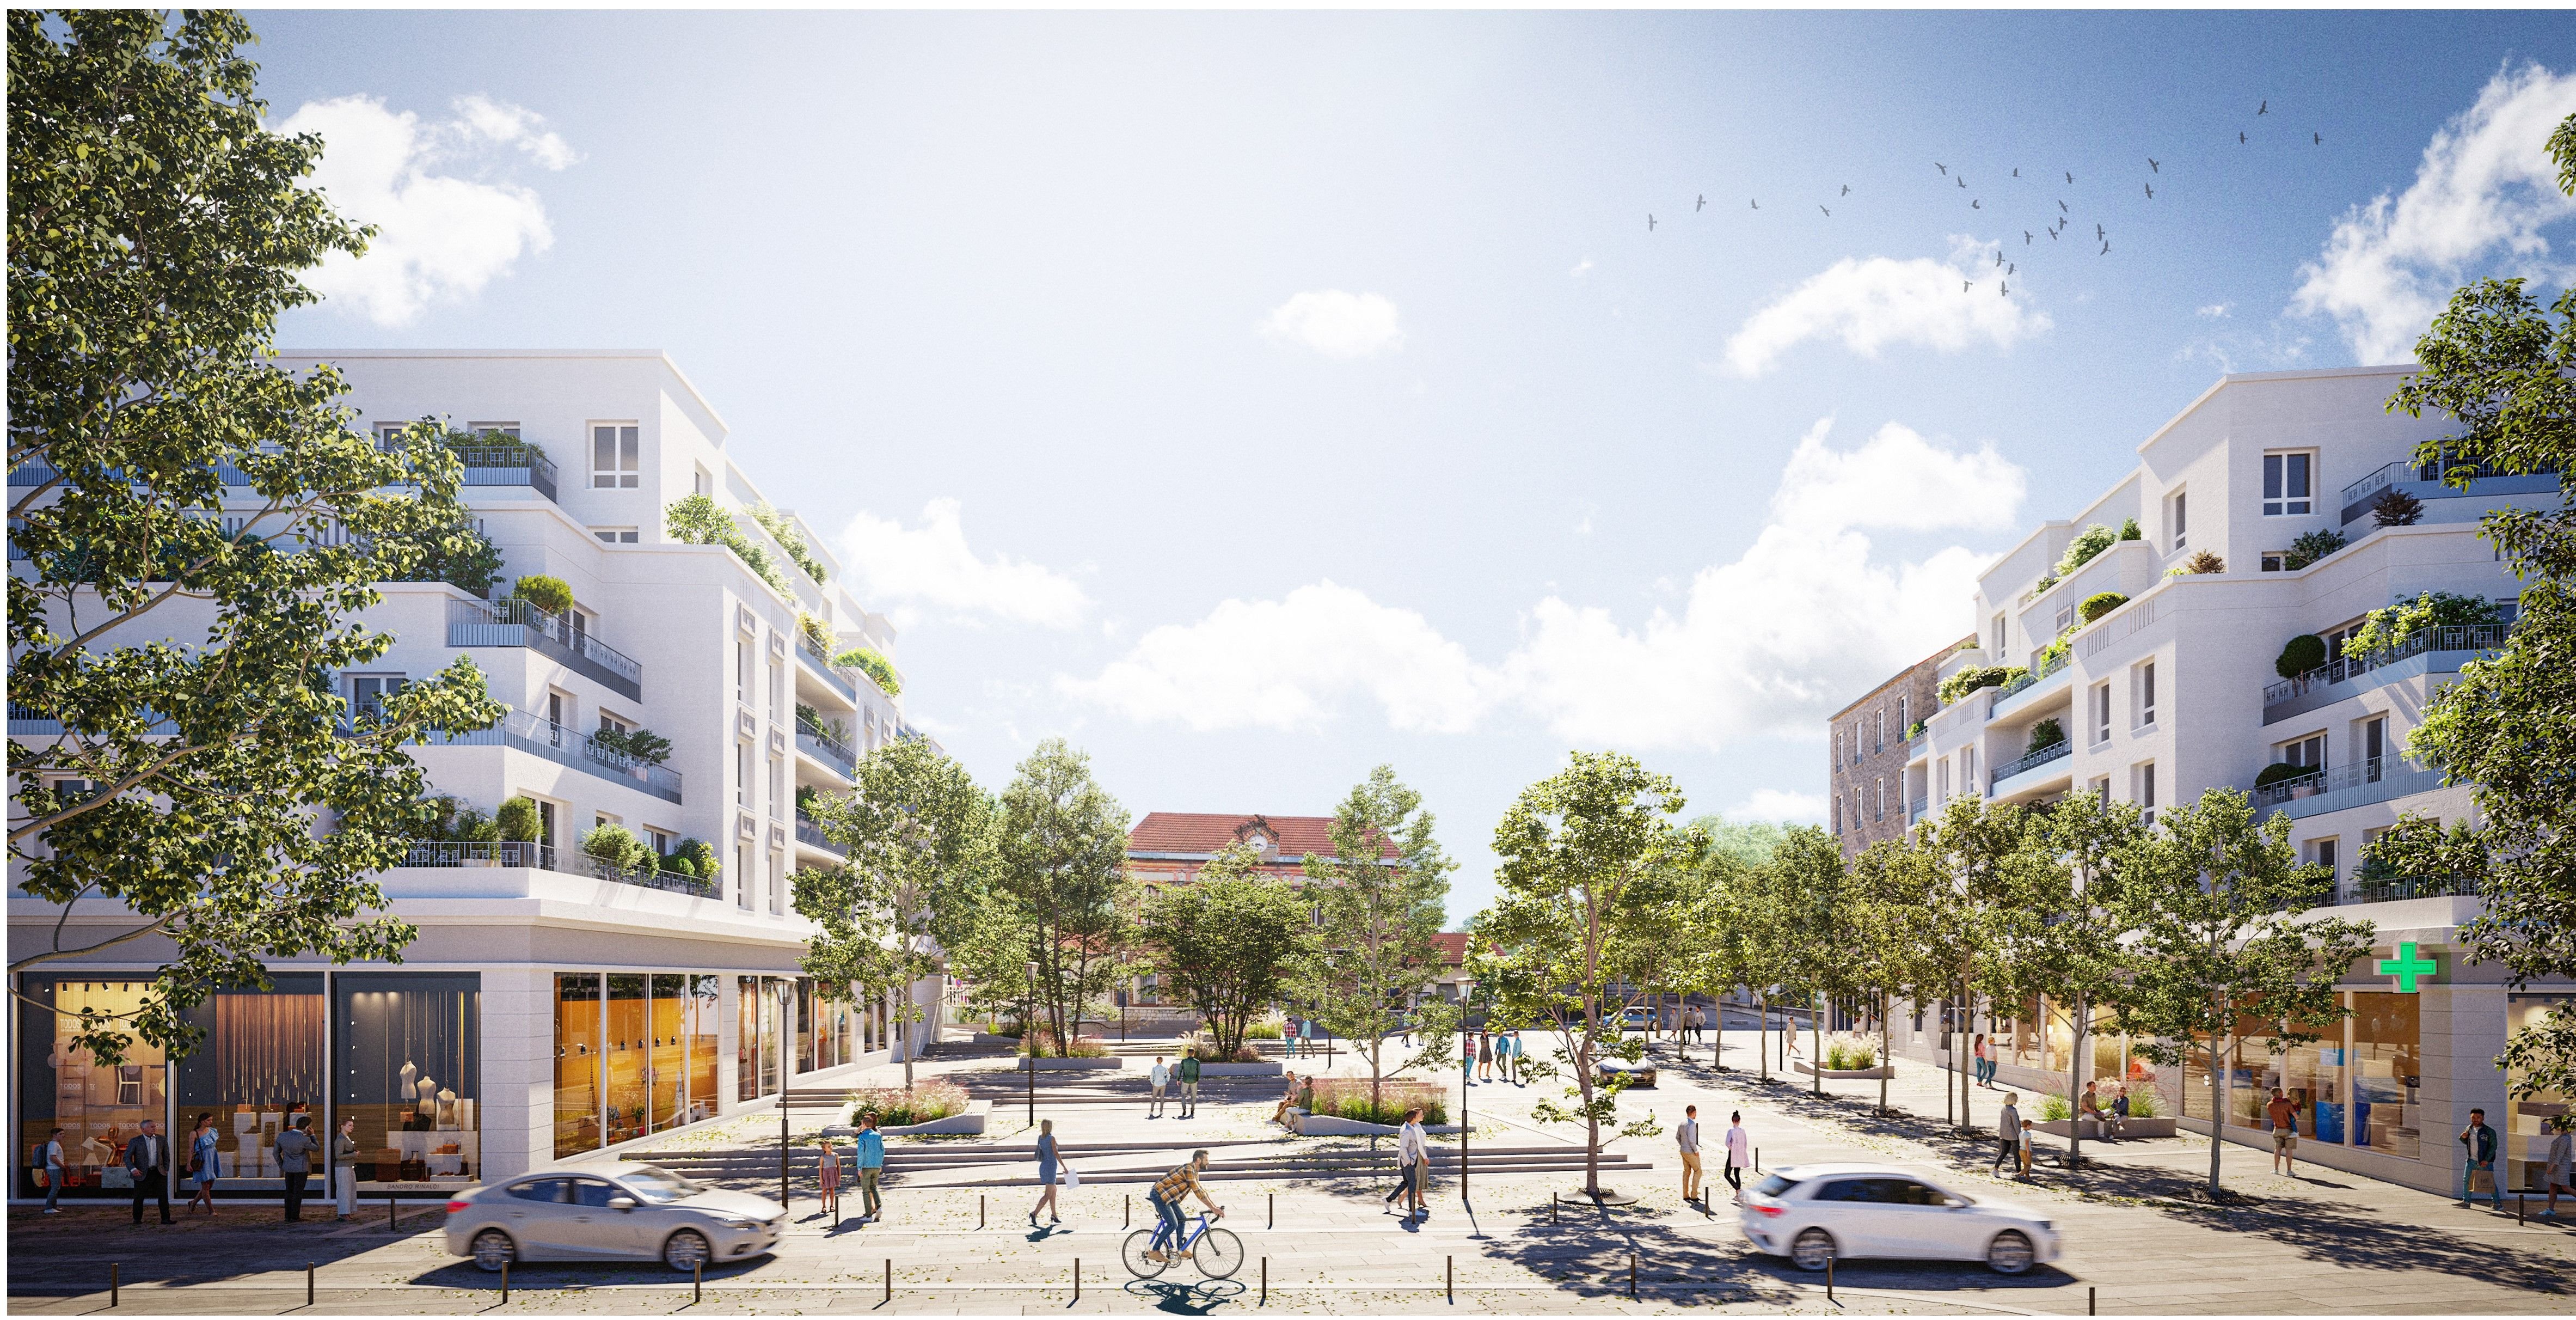 Voici le visage du futur parvis de la gare de Villeneuve-le-Roi, où des immeubles avec logements, commerces et maison de santé seront construits. Le parking sera enterré pour laisser place à un parvis piéton végétalisé. DR